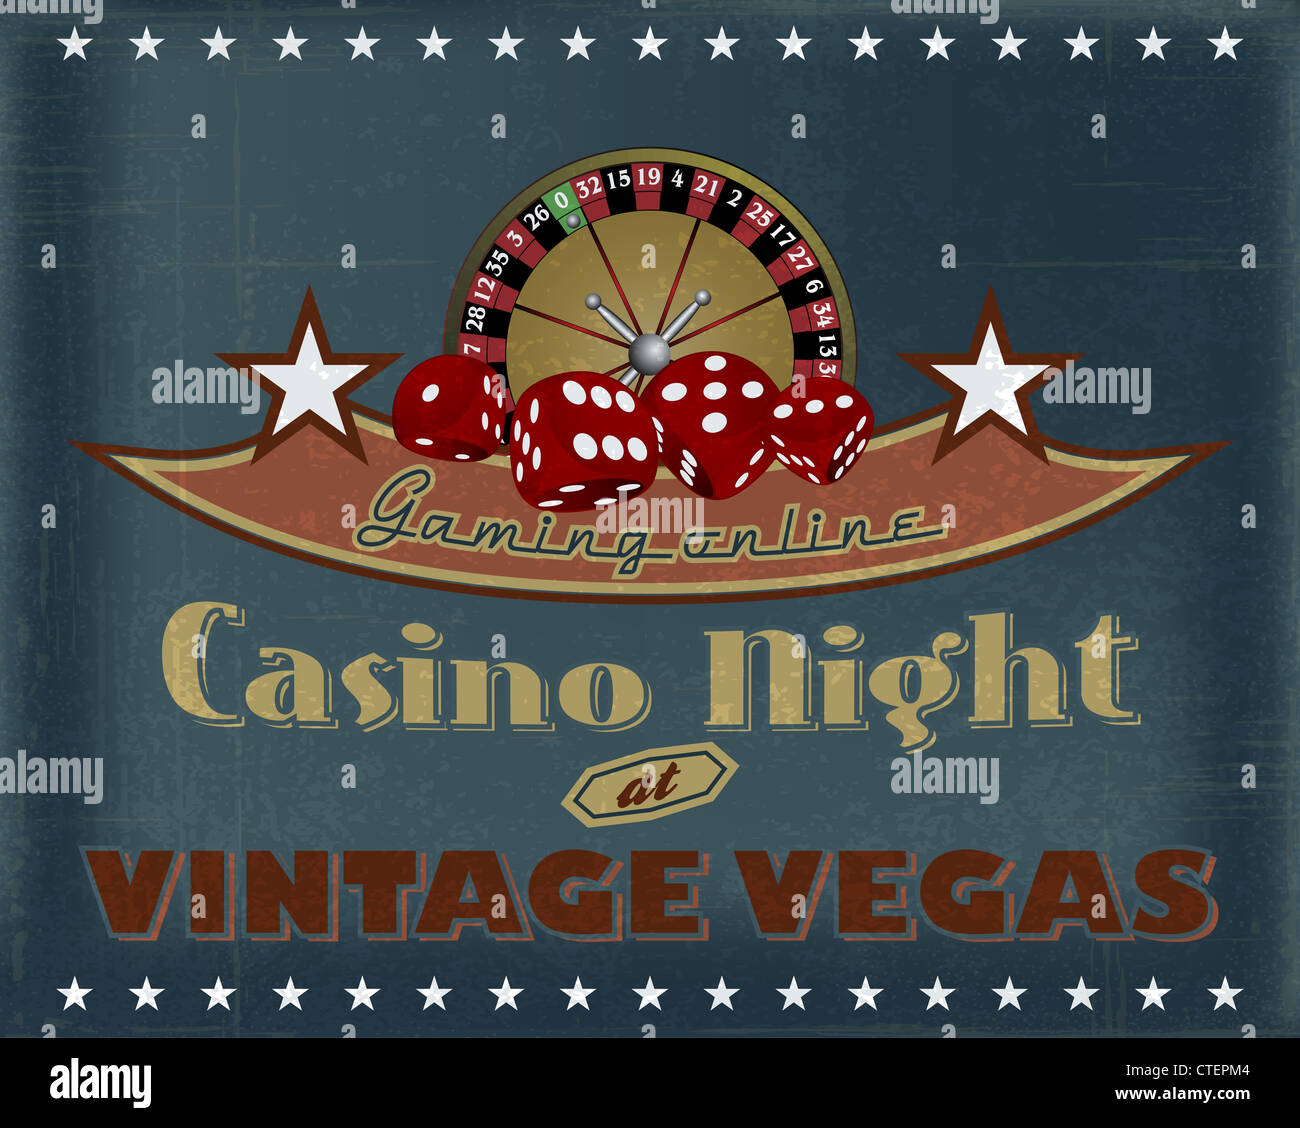 casino night vintage vegas gaming online poster Stock Photo